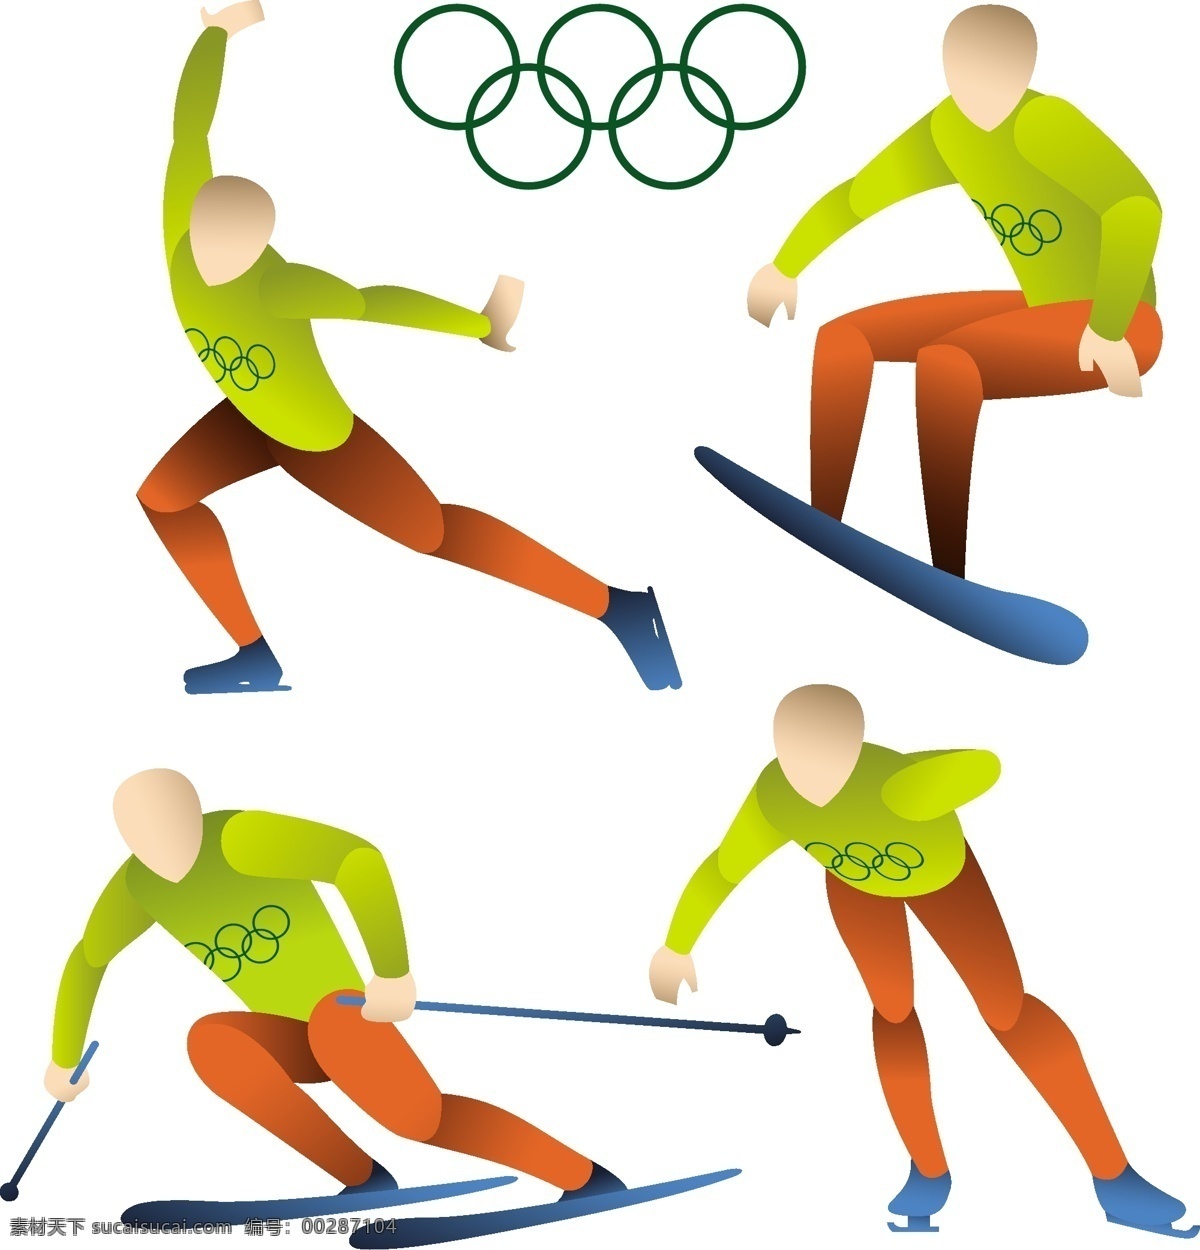 冬季 奥运会 扁平化 扁平化运动员 滑雪 溜冰 矢量人物 矢量素材 运动 运动项目